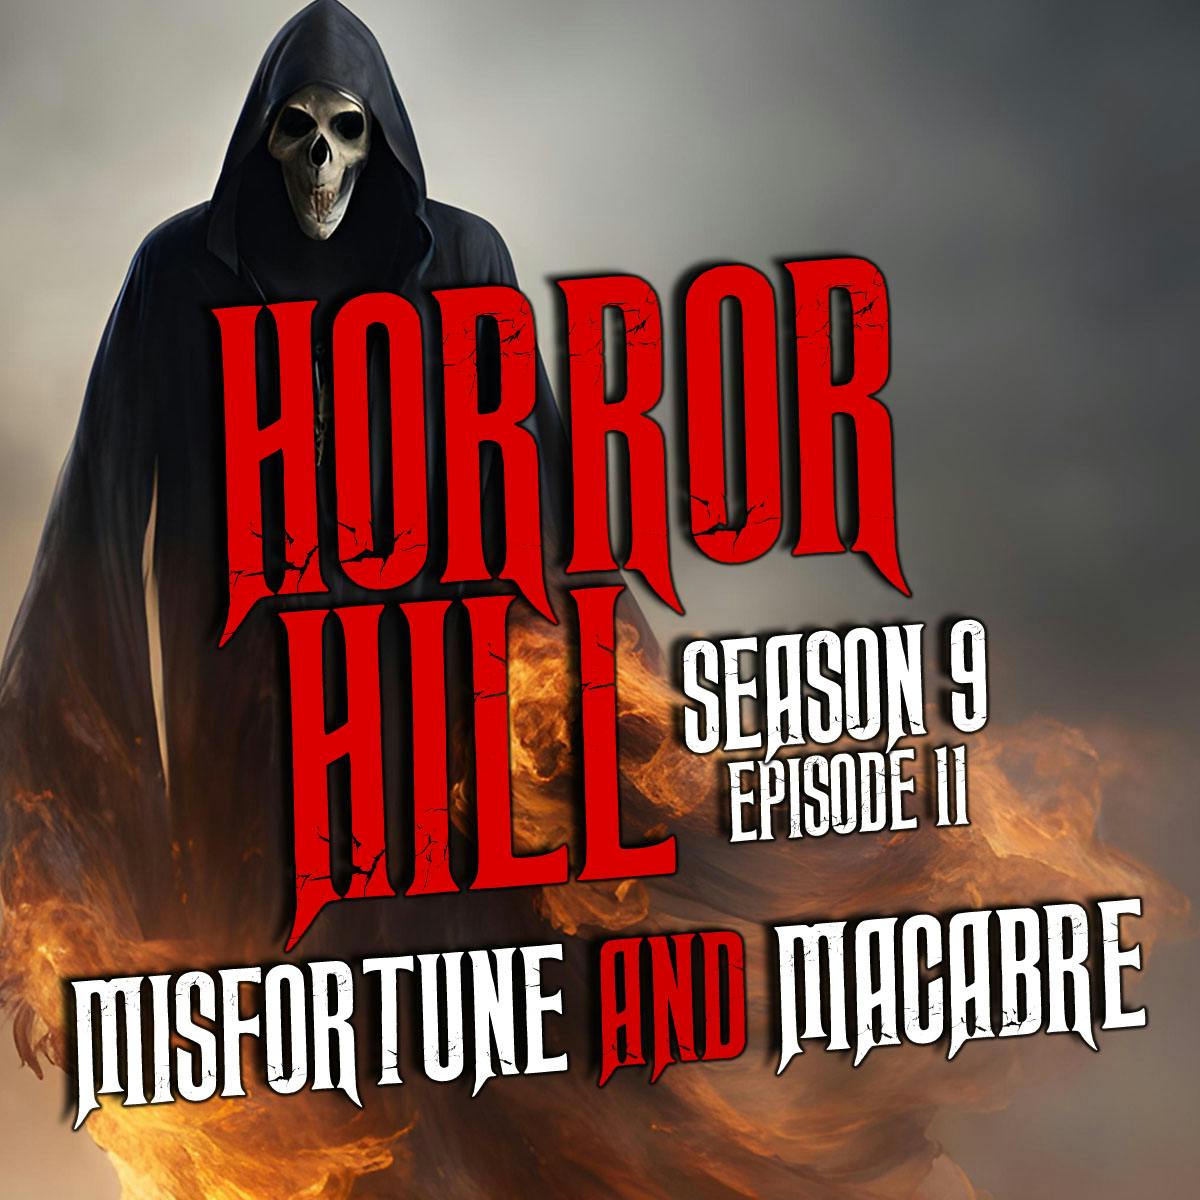 S9E11 - “Misfortune and Macabre" - Horror Hill